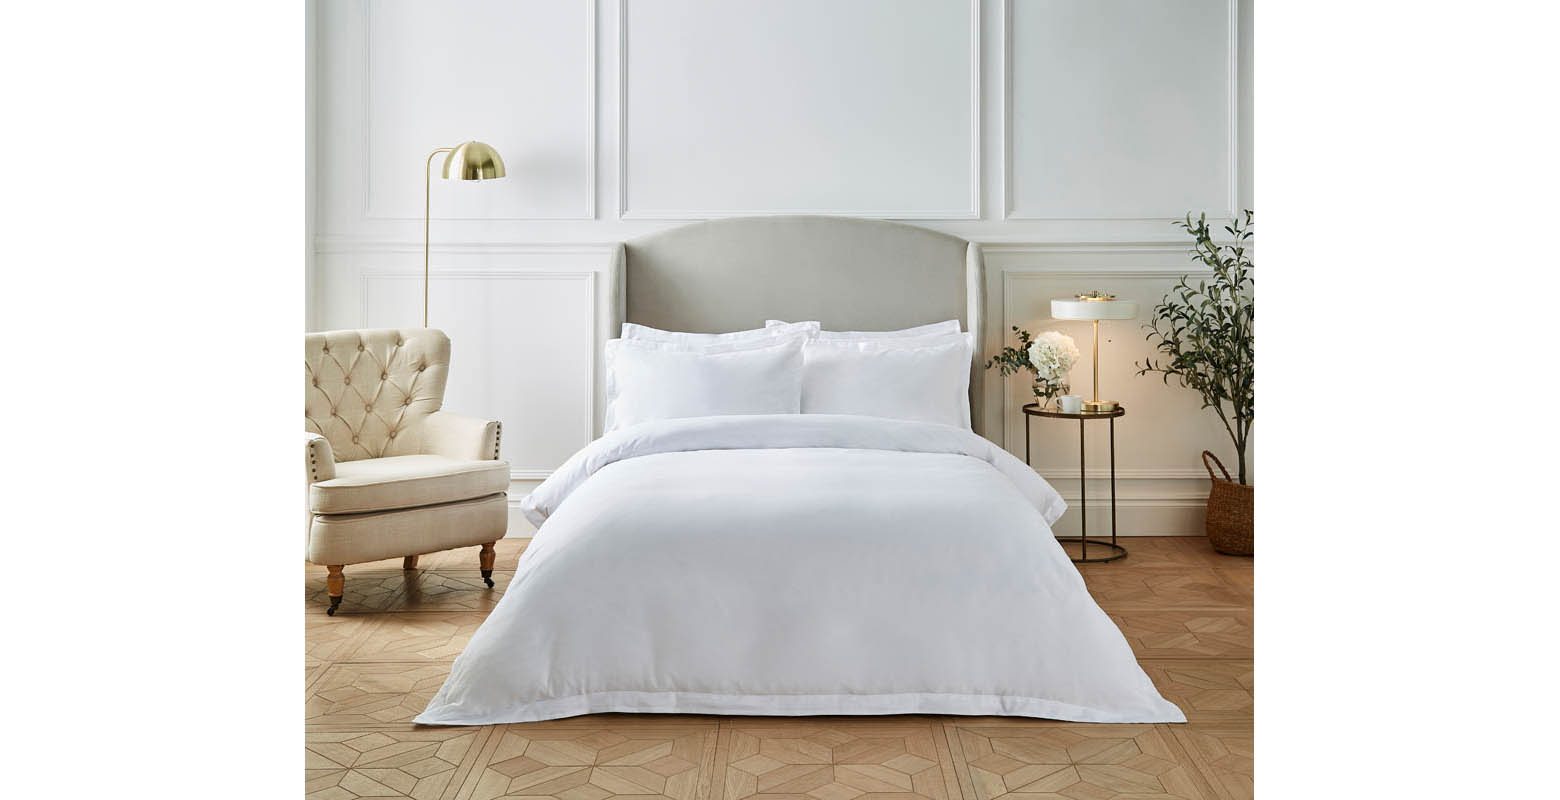 Liddell plain duvet cover set with pillowcases